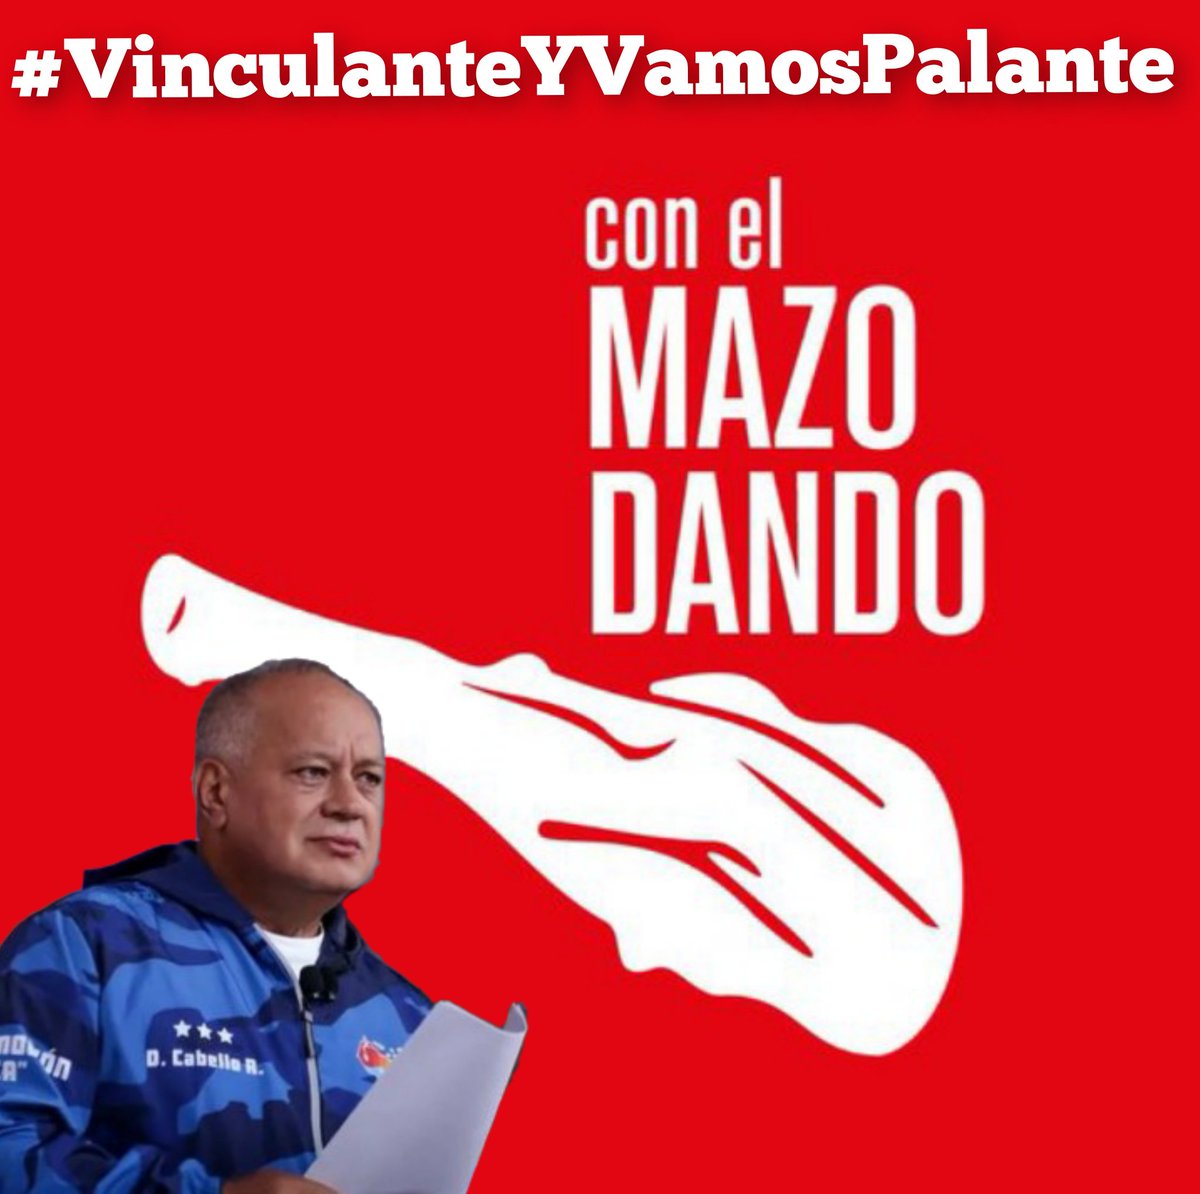 #VinculanteYVamosPalante @dcabellor @ConElMazoDando